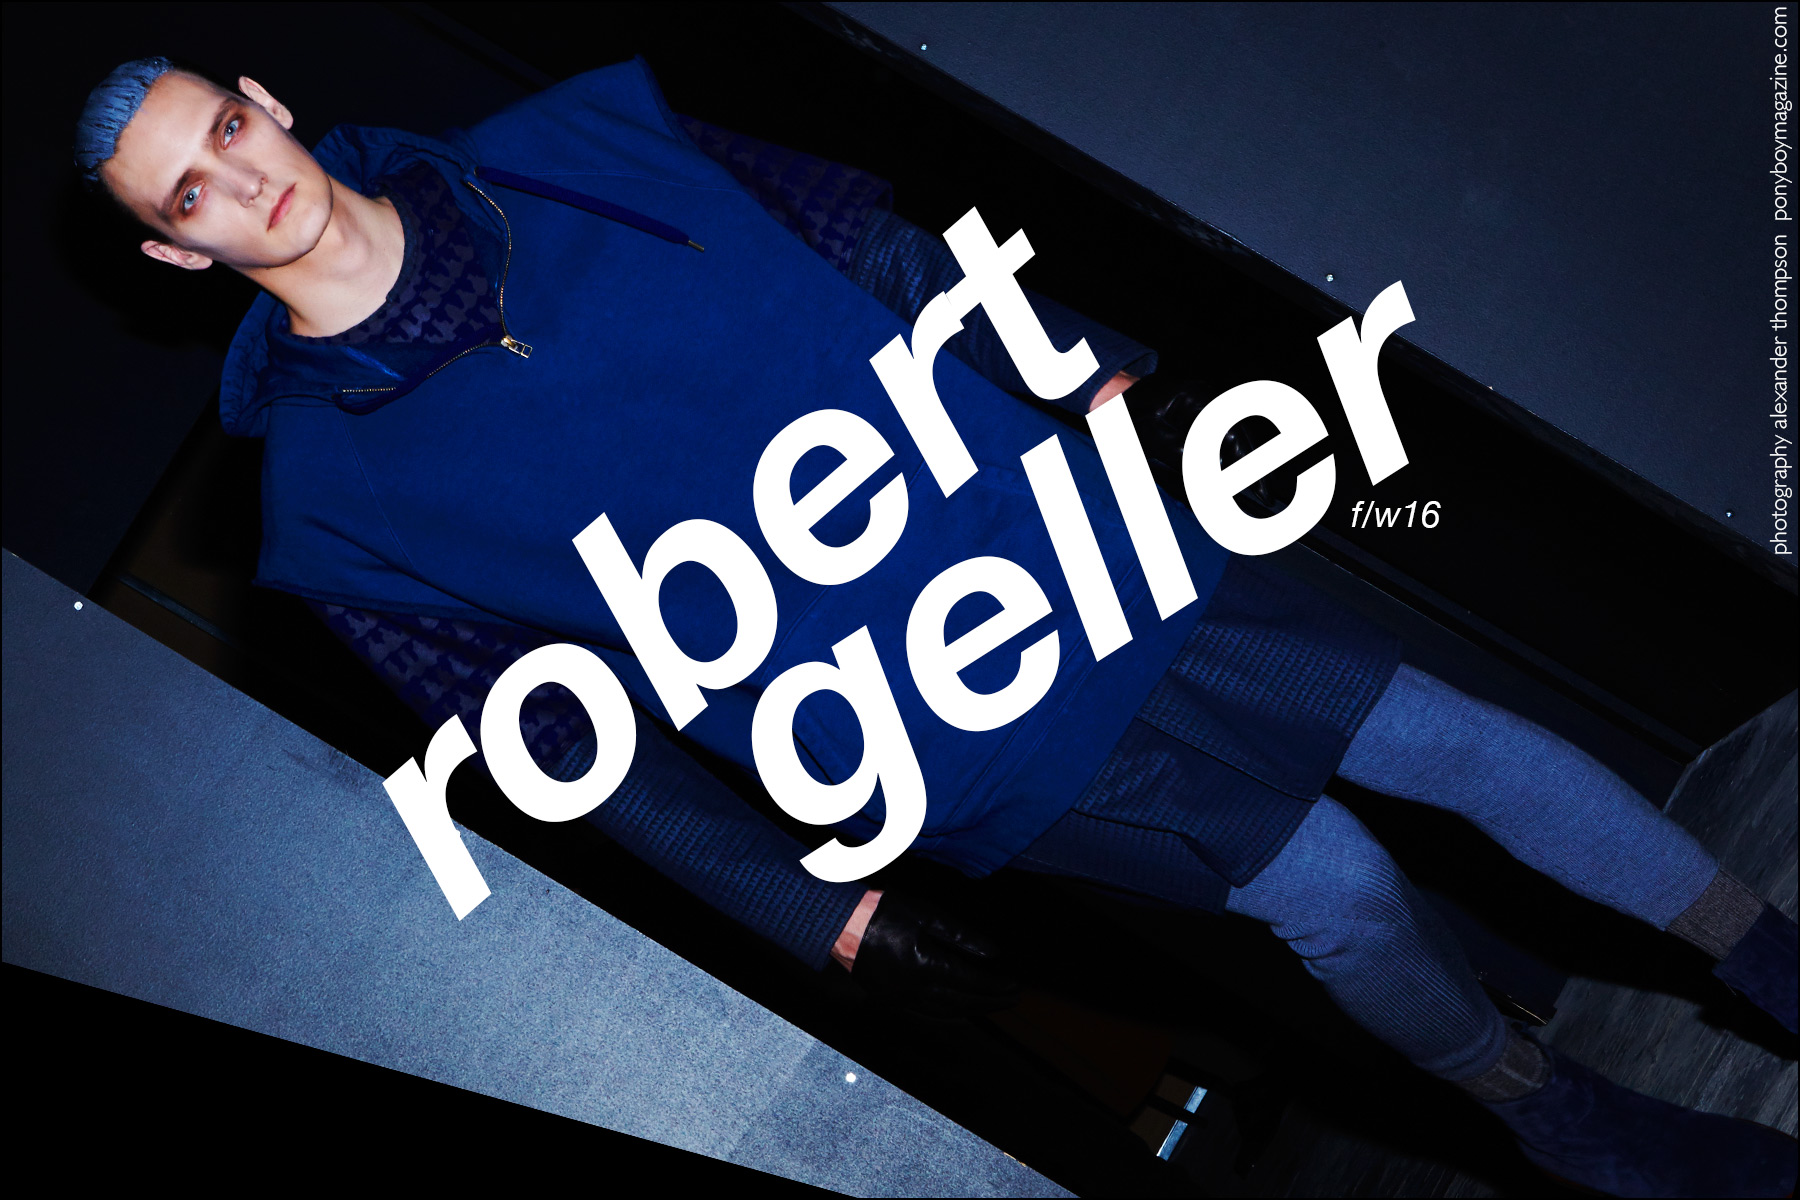 Robert Geller